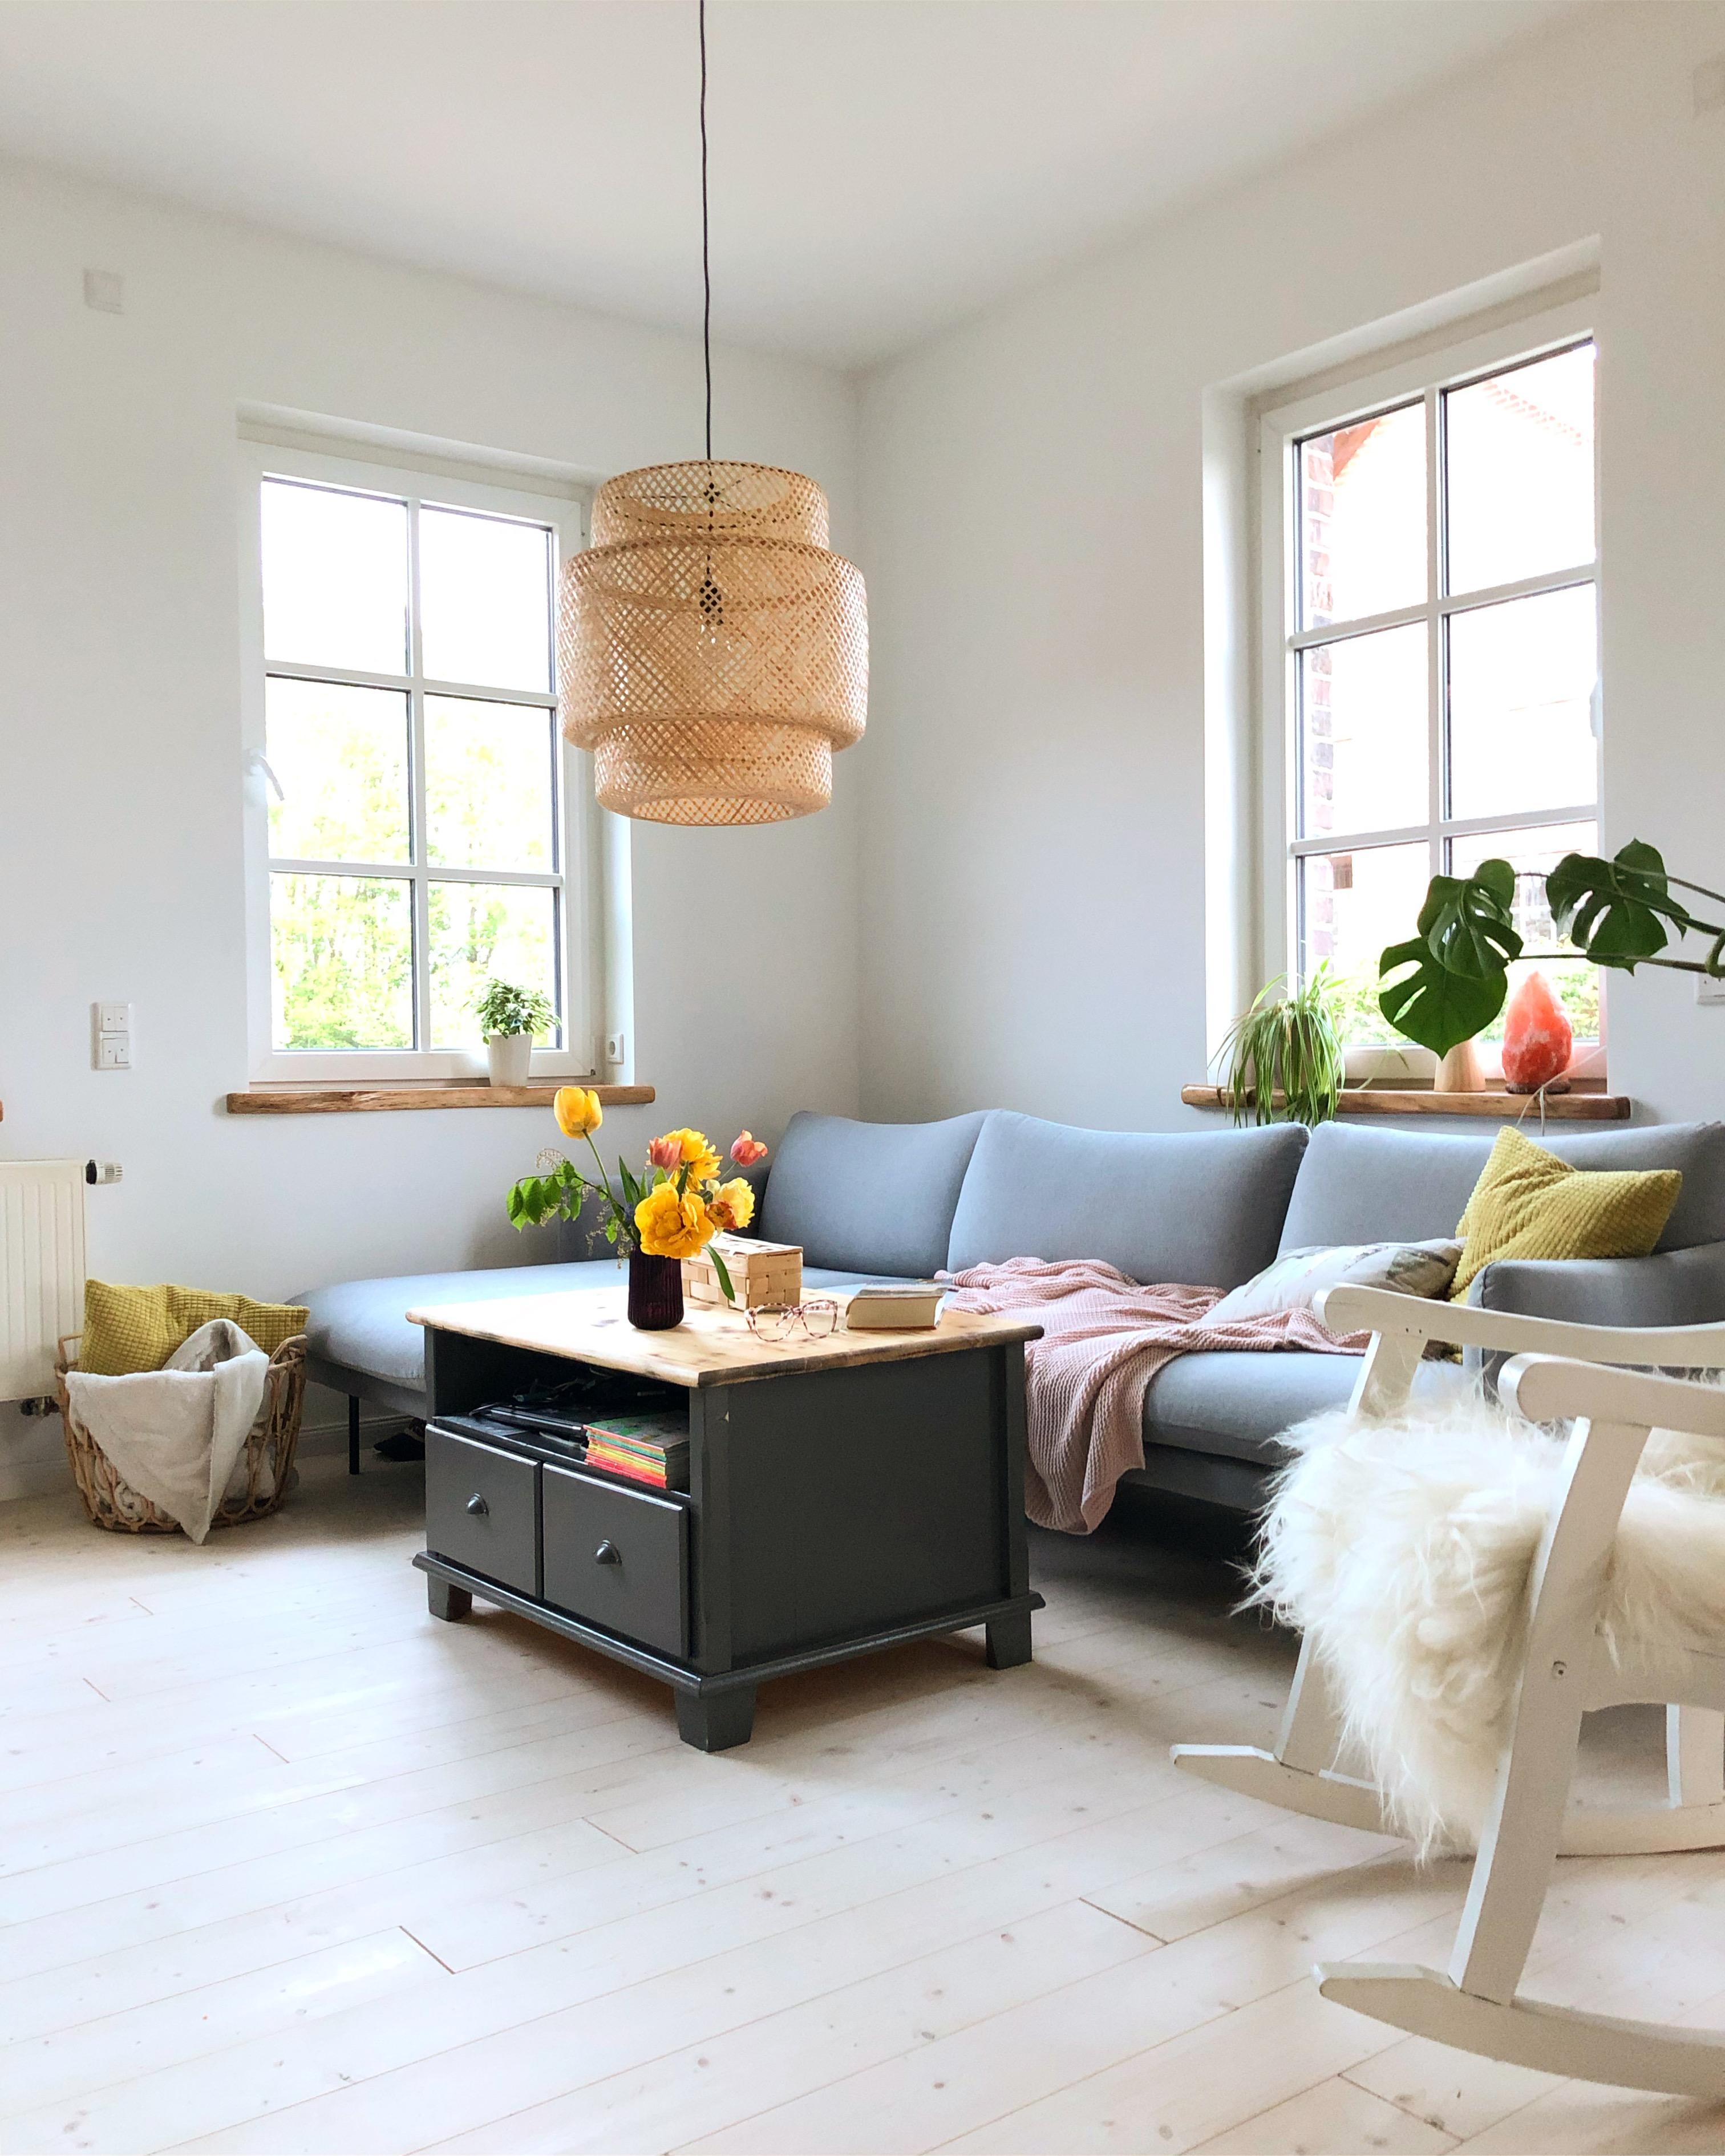 #livingroom #scandinavianhome #couchliving 